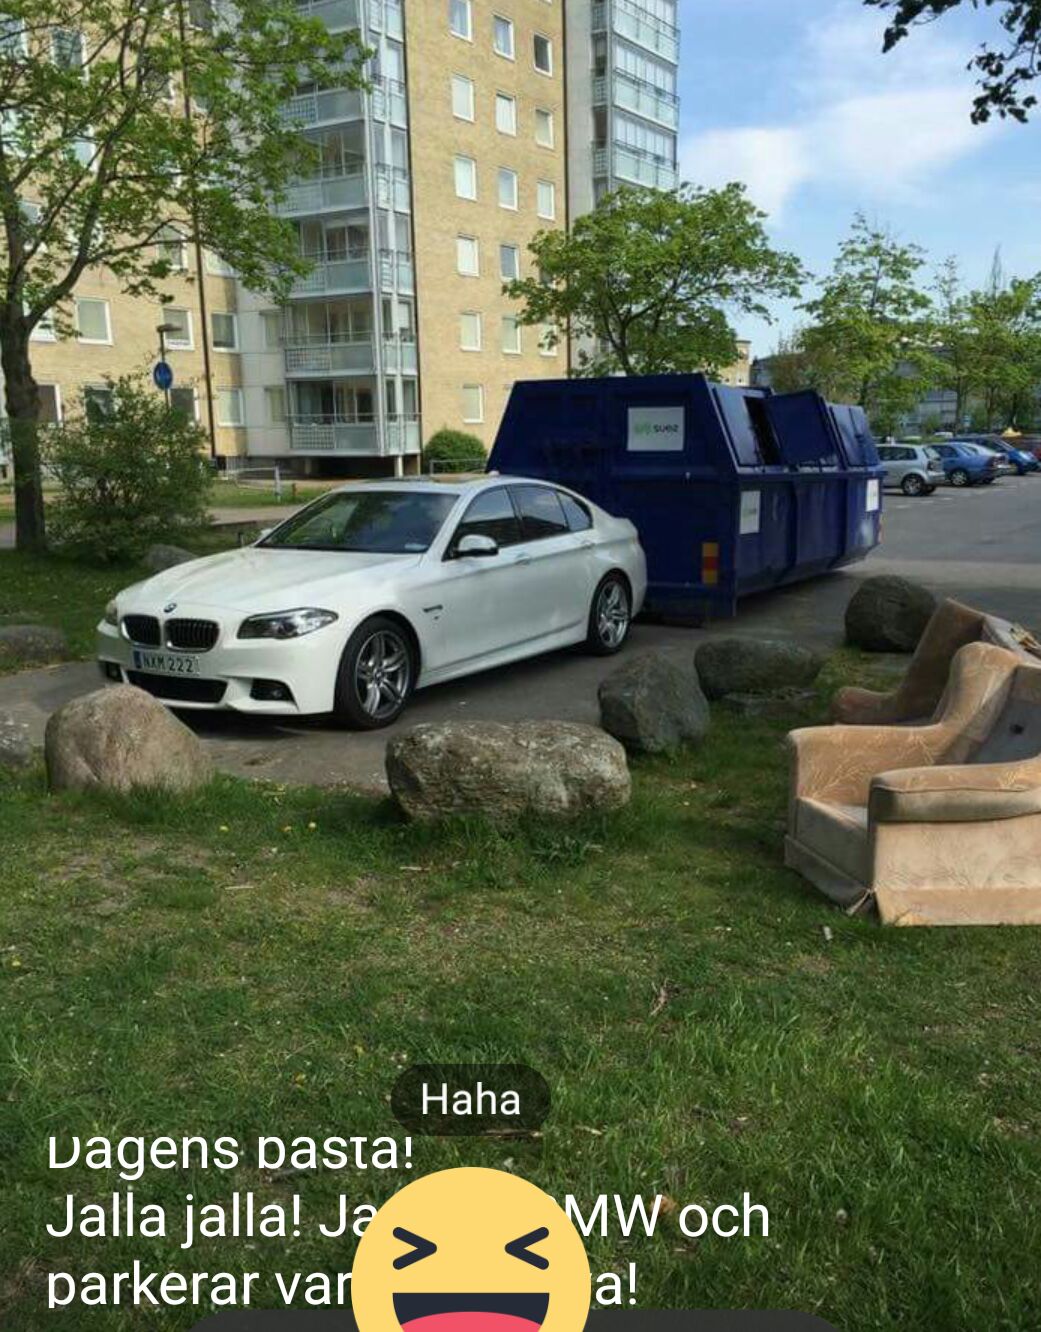 Parkeringsregler gäller i Sverige